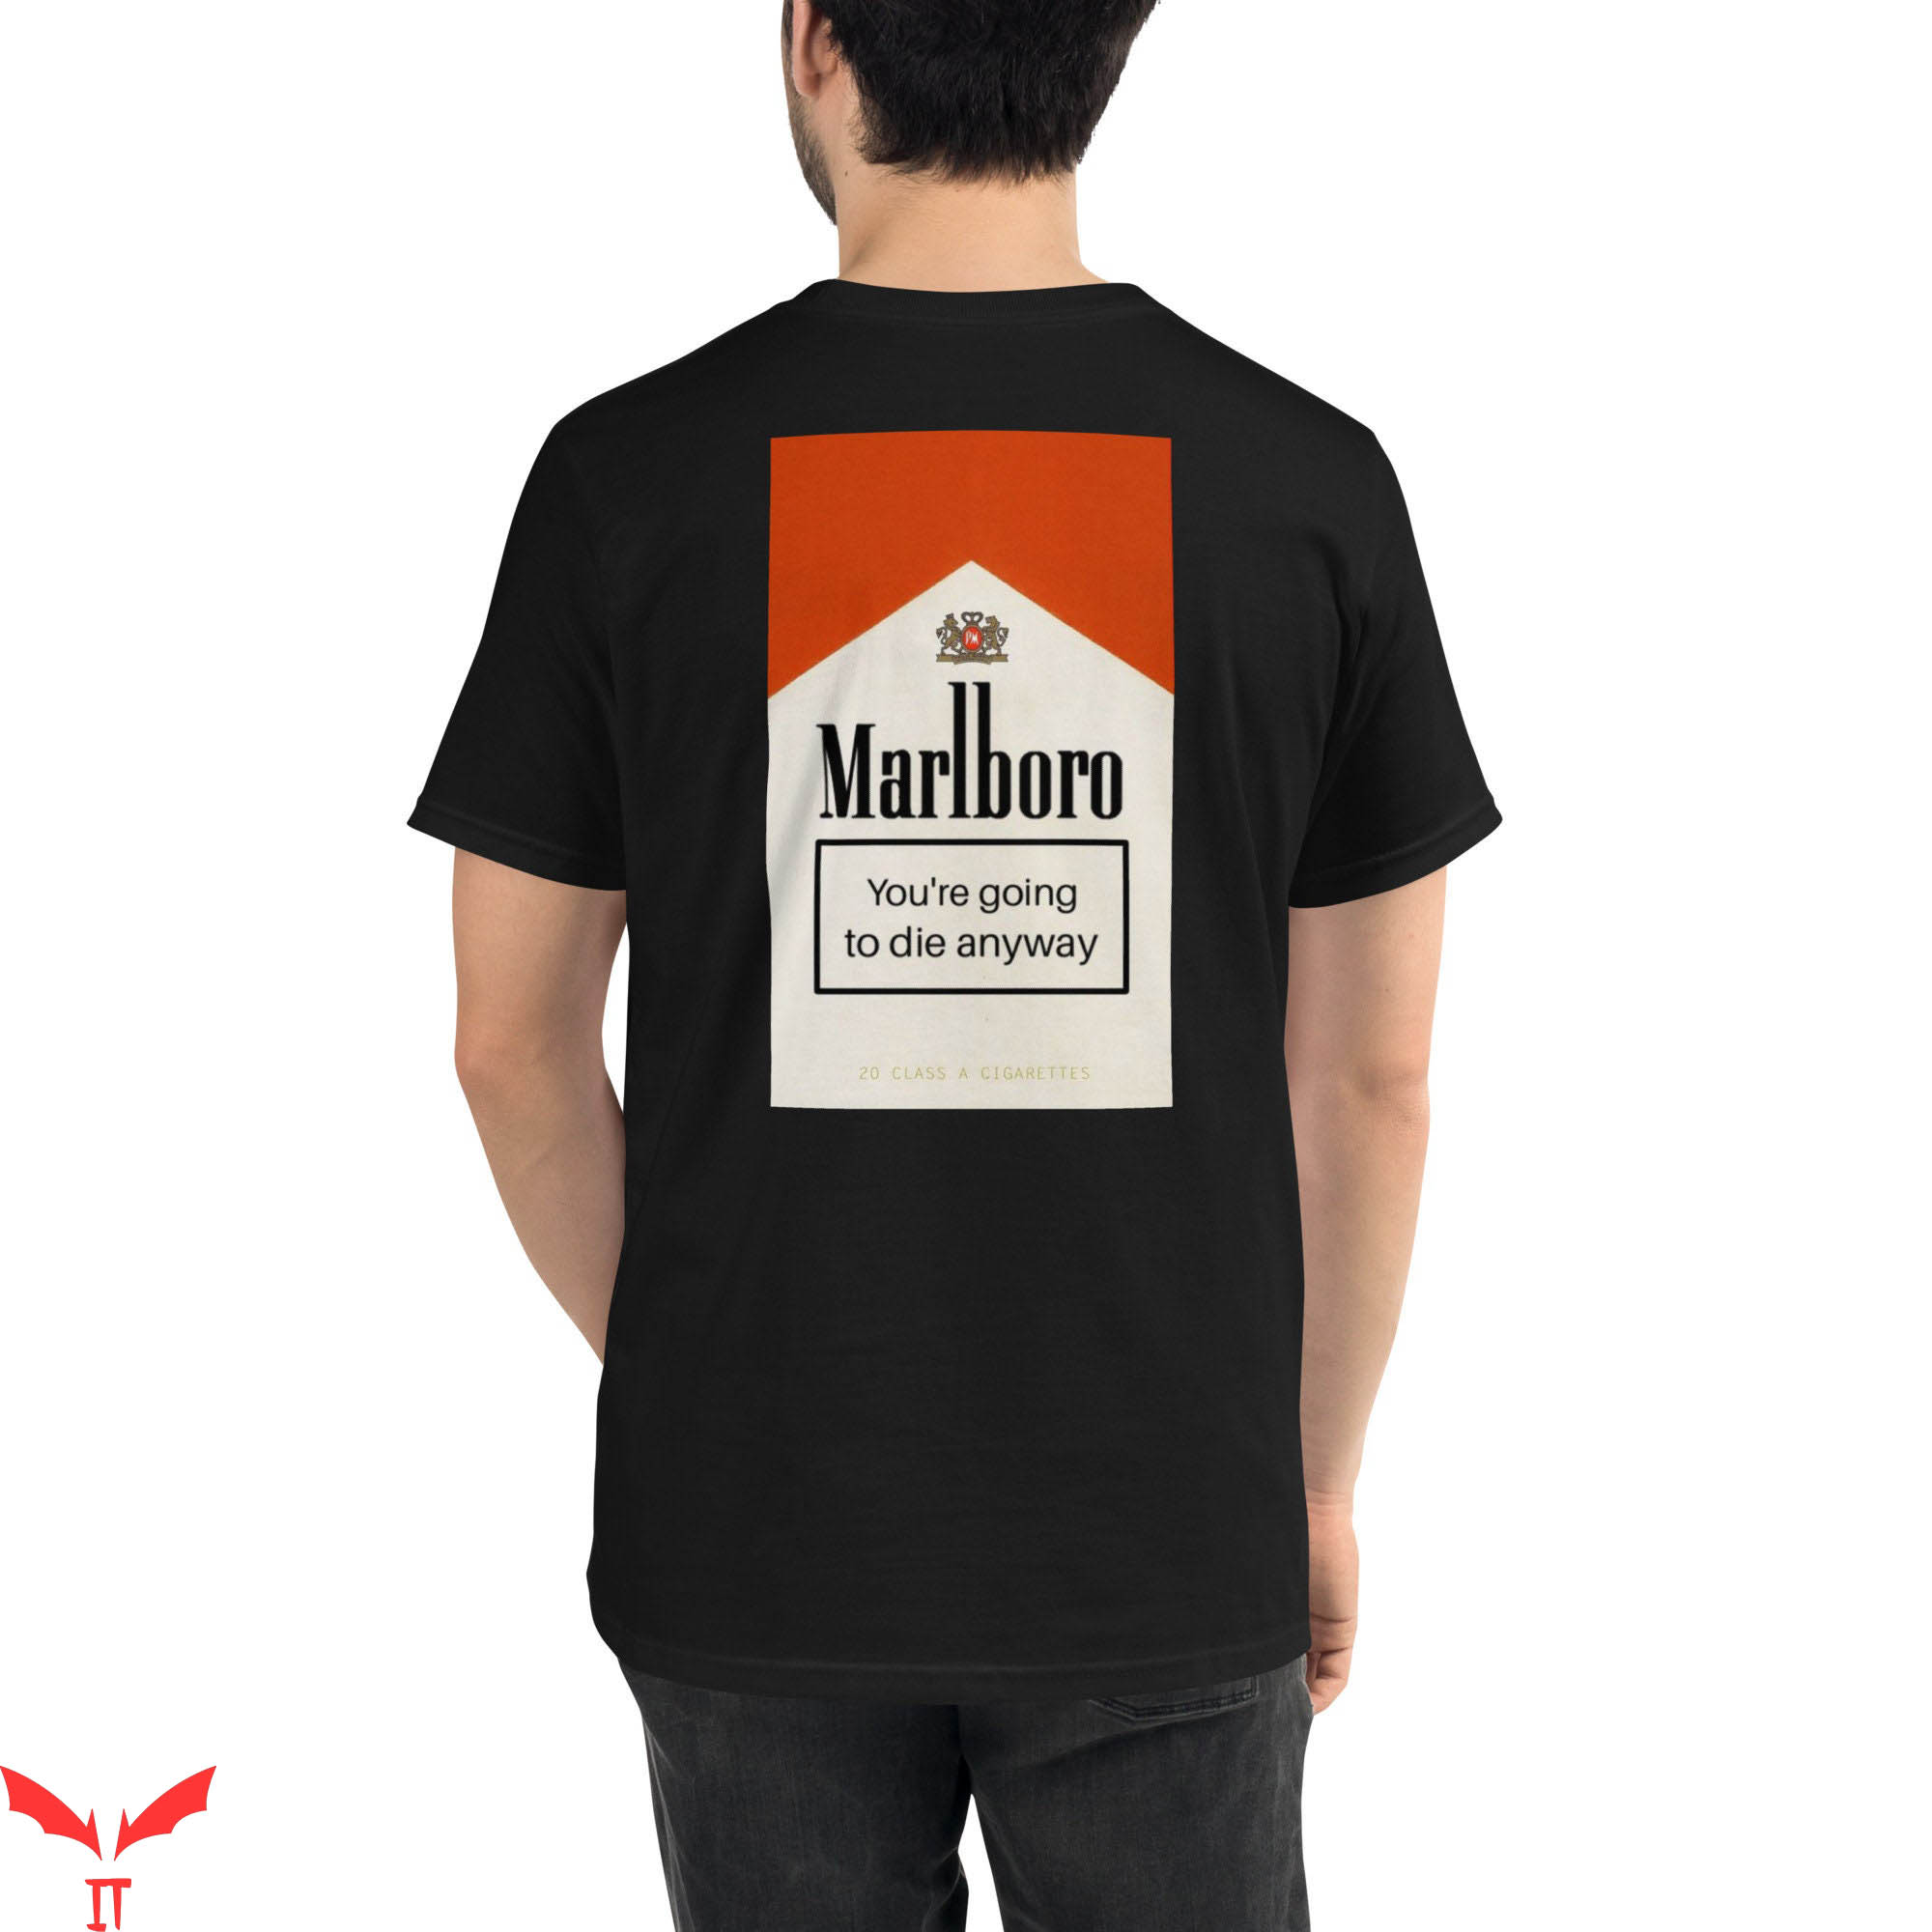 Marlboro T-Shirt Your Gonna Die Anyway Organic Tee Shirt